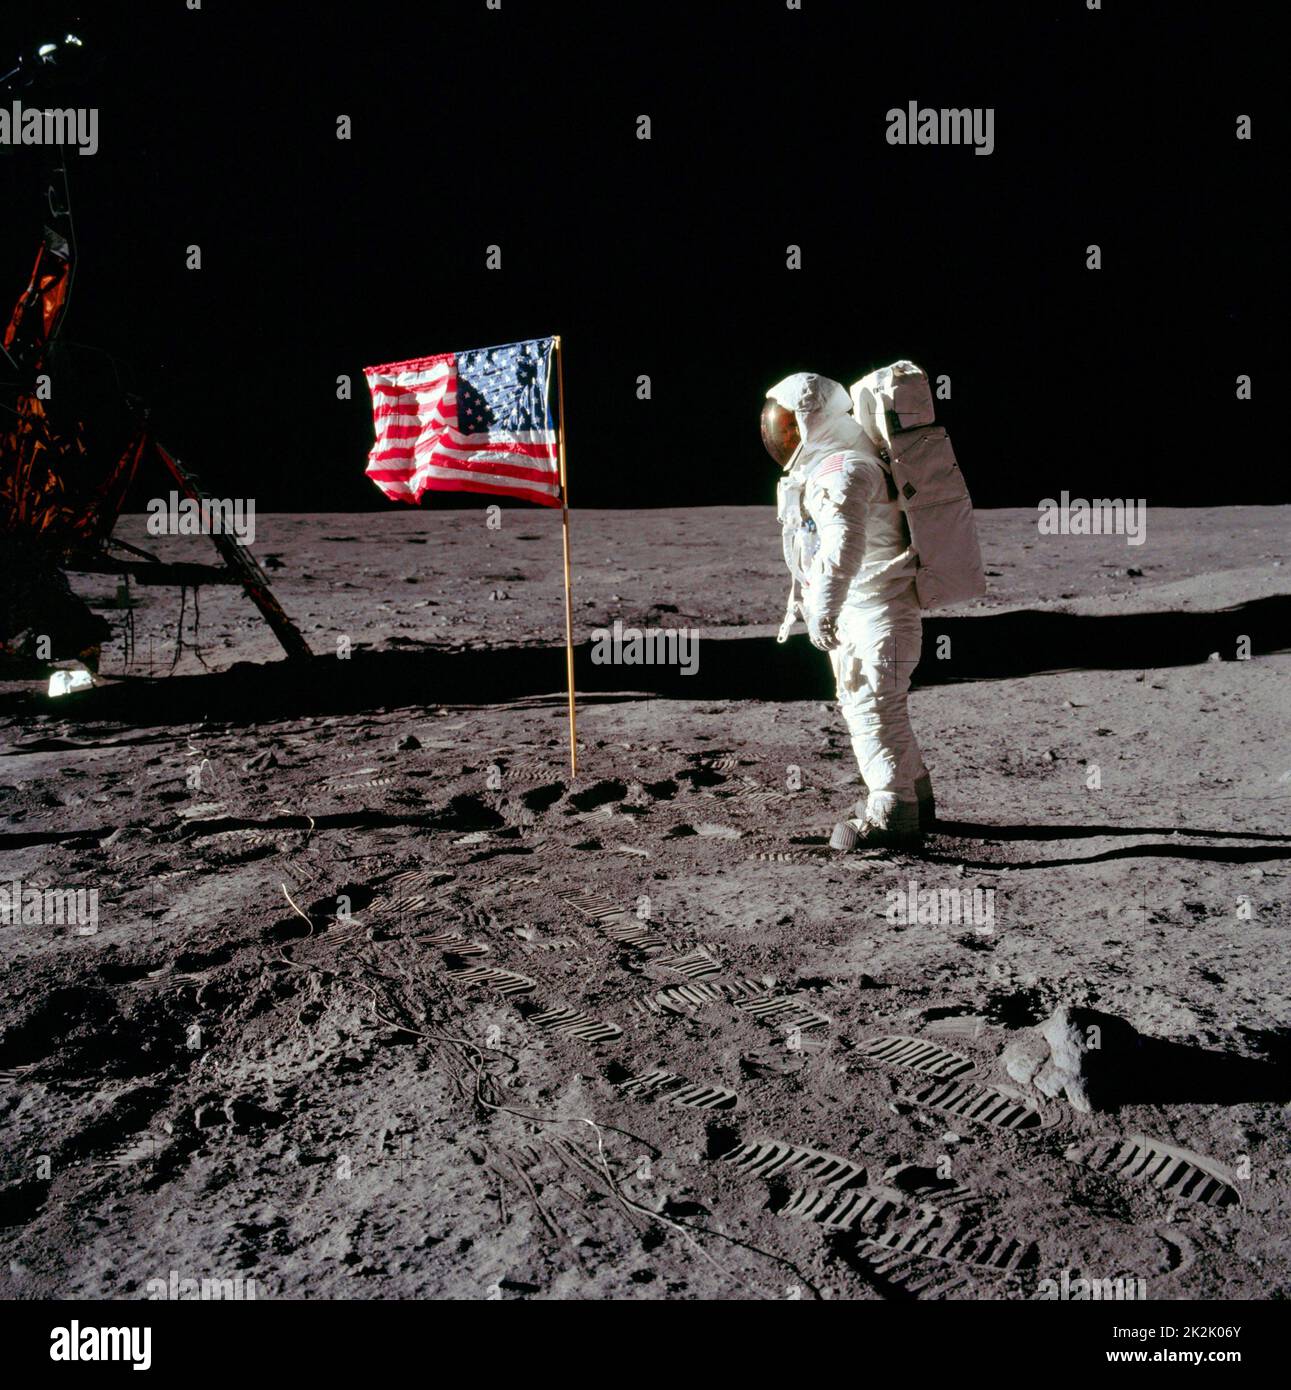 L'astronaute Neil A. Armstrong, commandant de mission d'Apollo ll, à l'assemblage de stockage d'équipement modulaire (MESA) du module lunaire « Eagle » sur la première activité extravéhiculaire historique (EVA) sur la surface lunaire. L'astronaute Edwin E. Aldrin Jr. A pris la photo avec un appareil photo Hasselblad 70mm. La plupart des photos de la mission Apollo 11 montrent Buzz Aldrin. C'est l'un des seuls qui montrent Neil Armstrong 20 juillet 1969. Banque D'Images